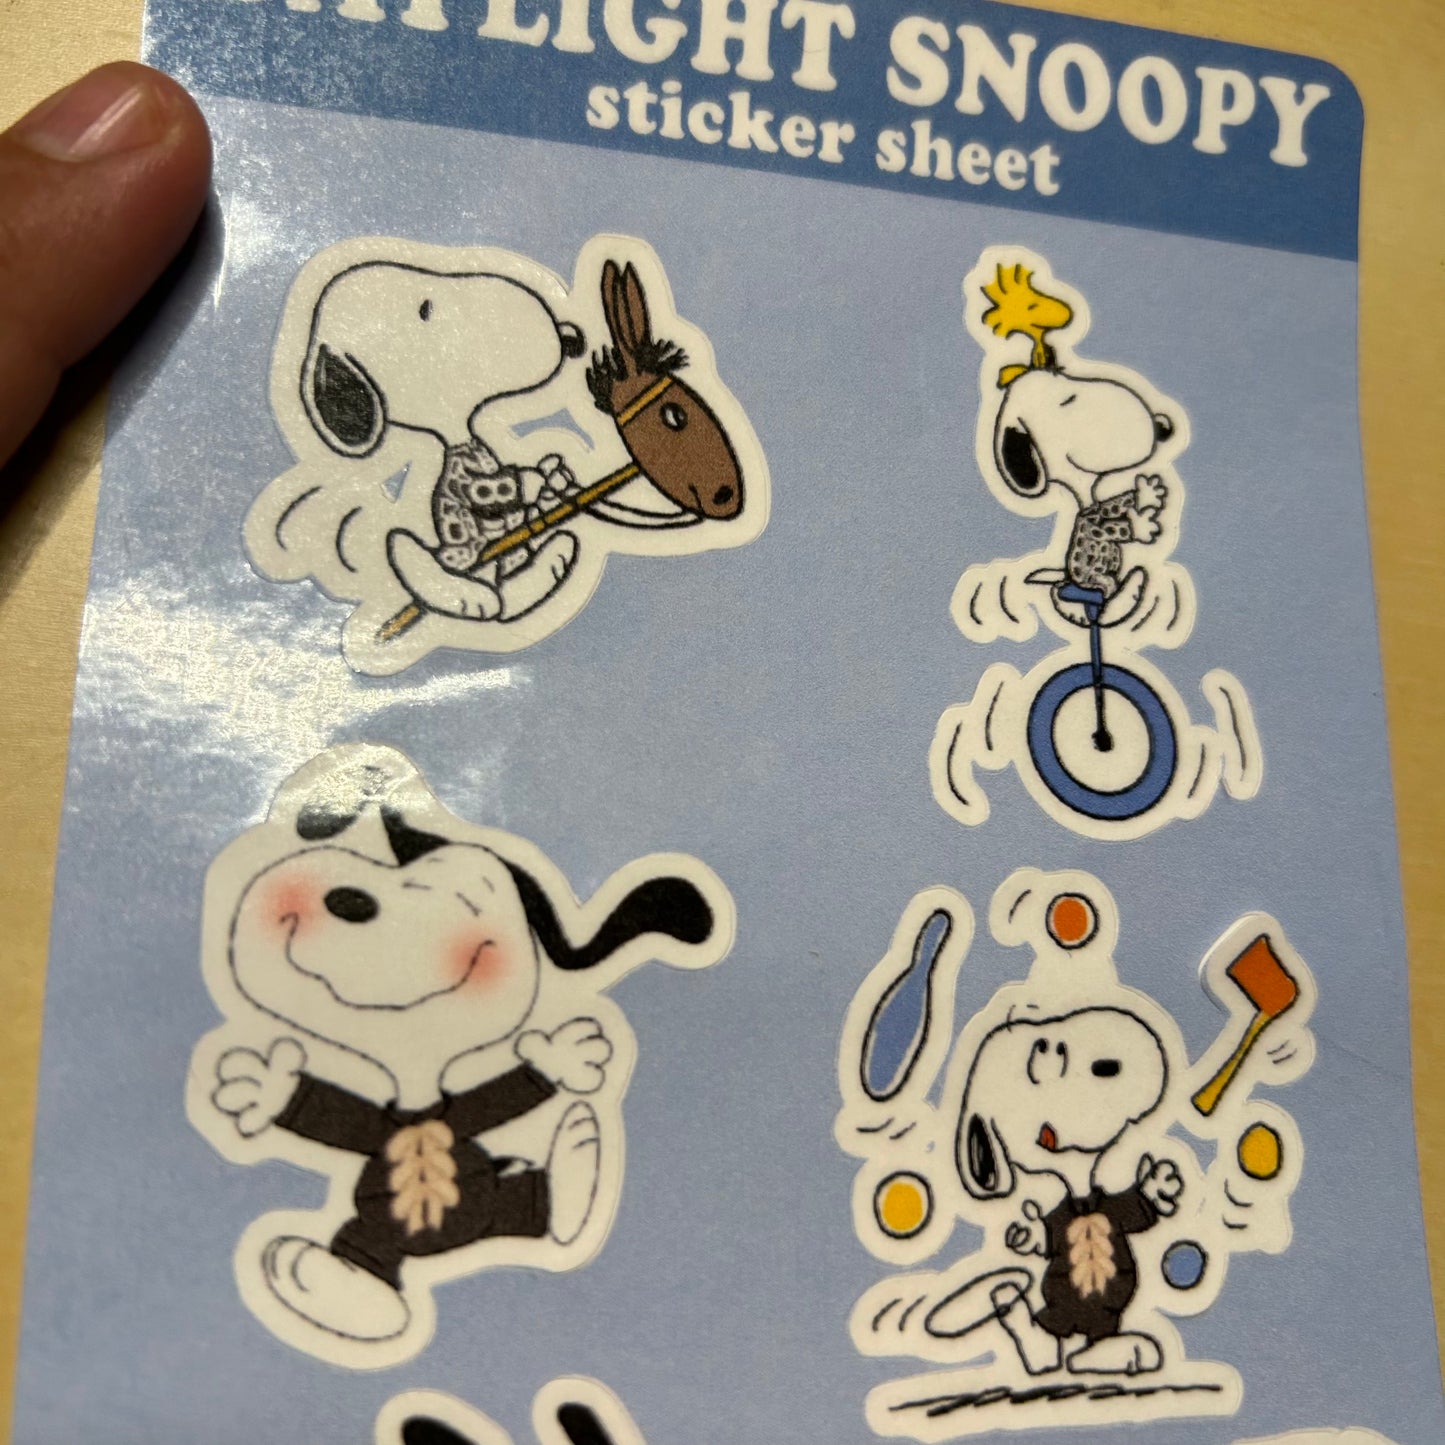 Daylight Snoopy Sticker Sheet